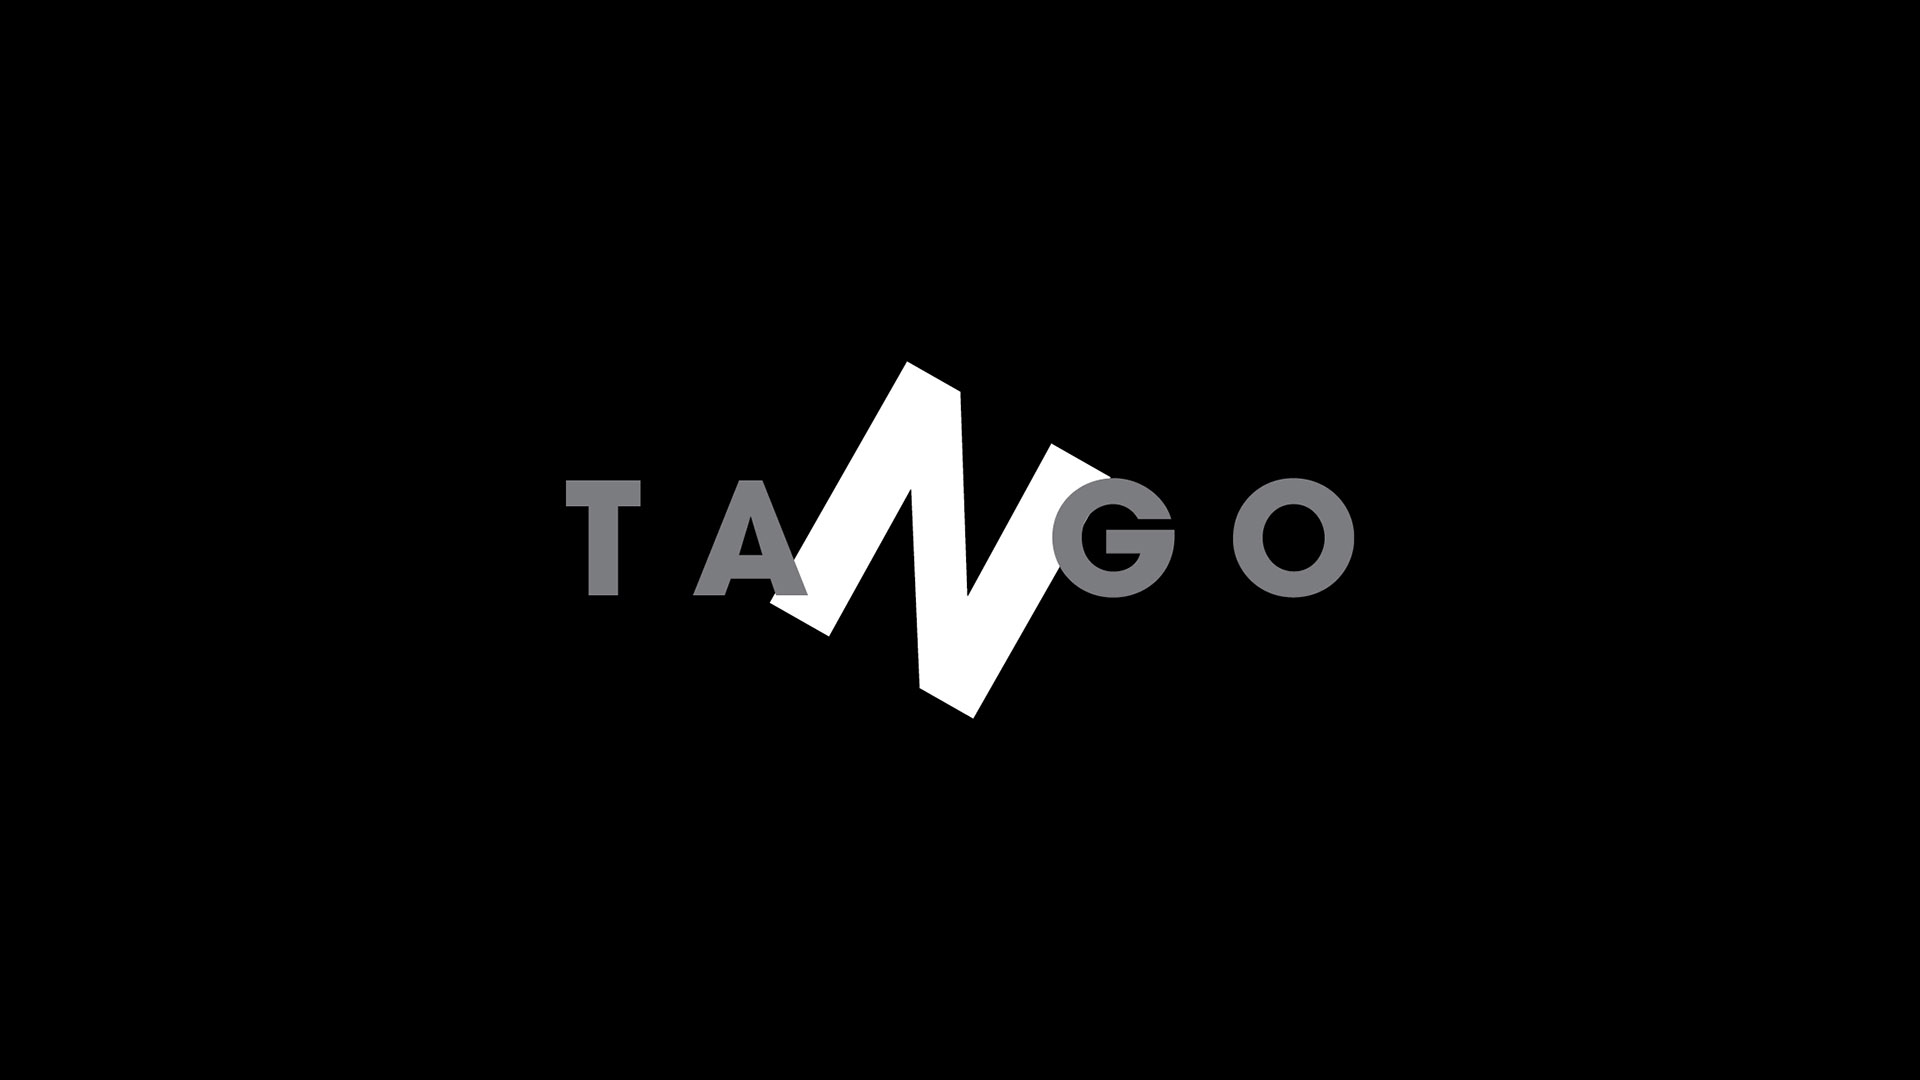 tango apartment logo white n on black